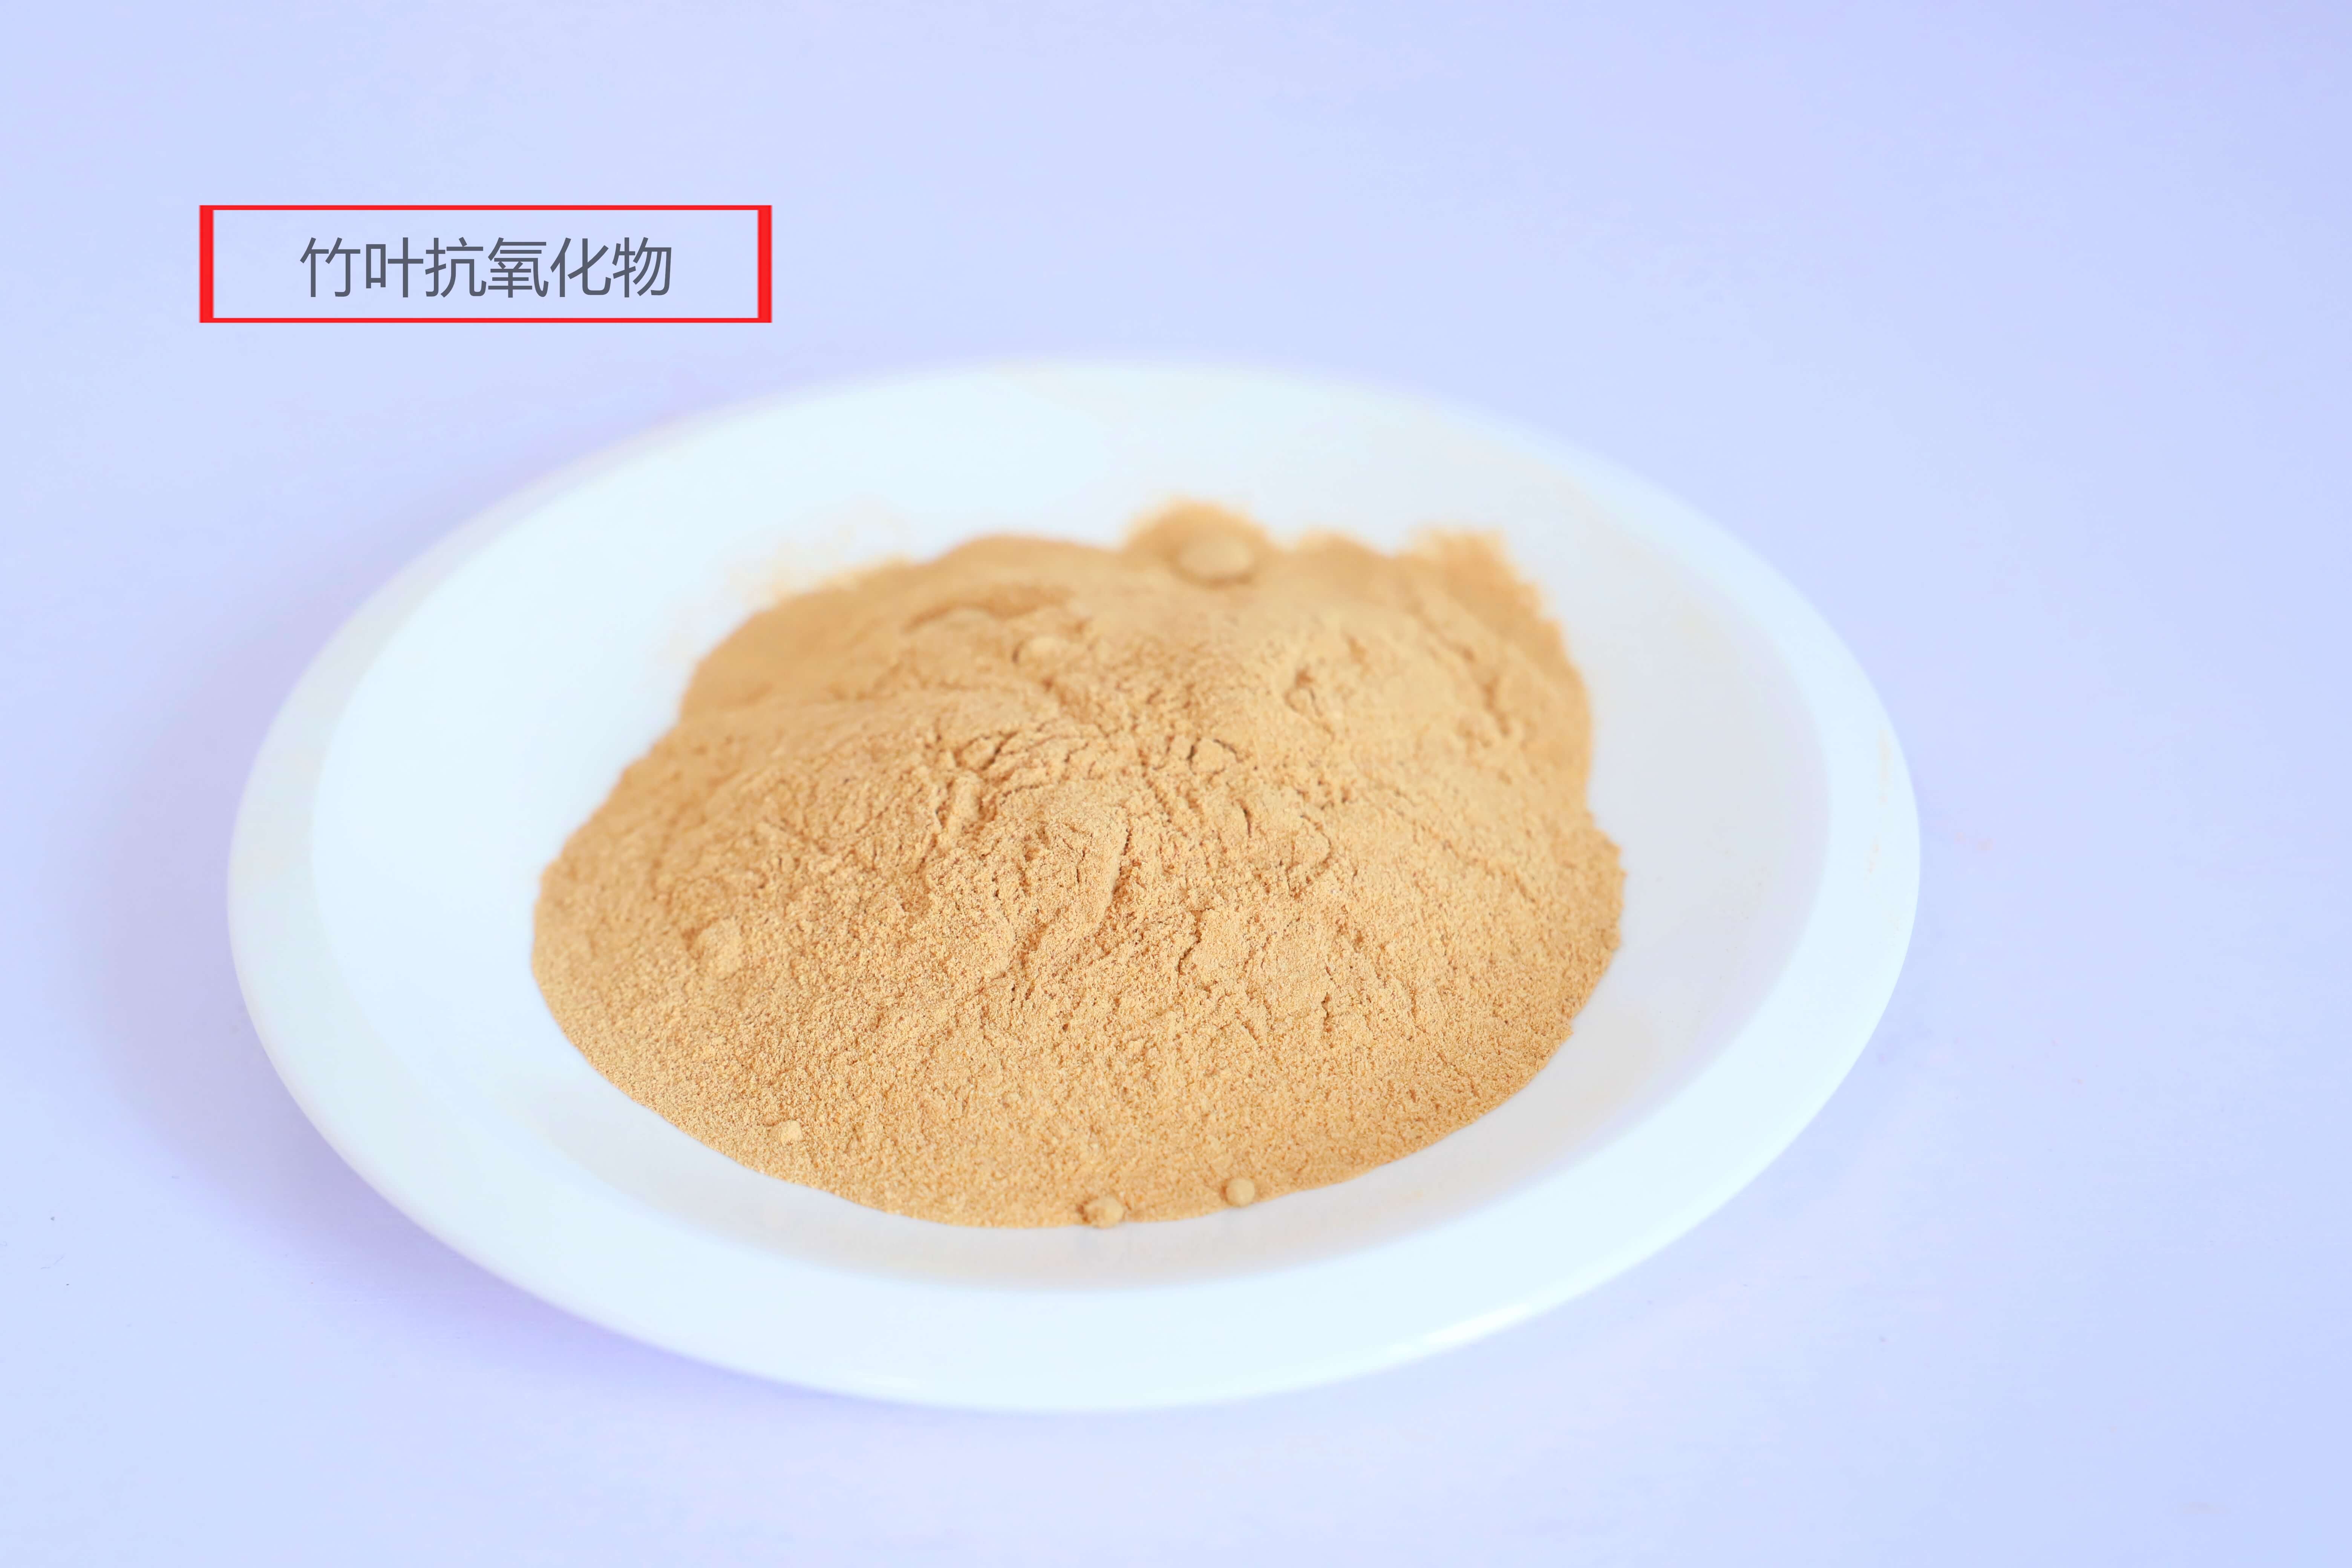 郑州竹叶抗氧化物生产厂家 大量批发供应优质食品级竹叶抗氧化物